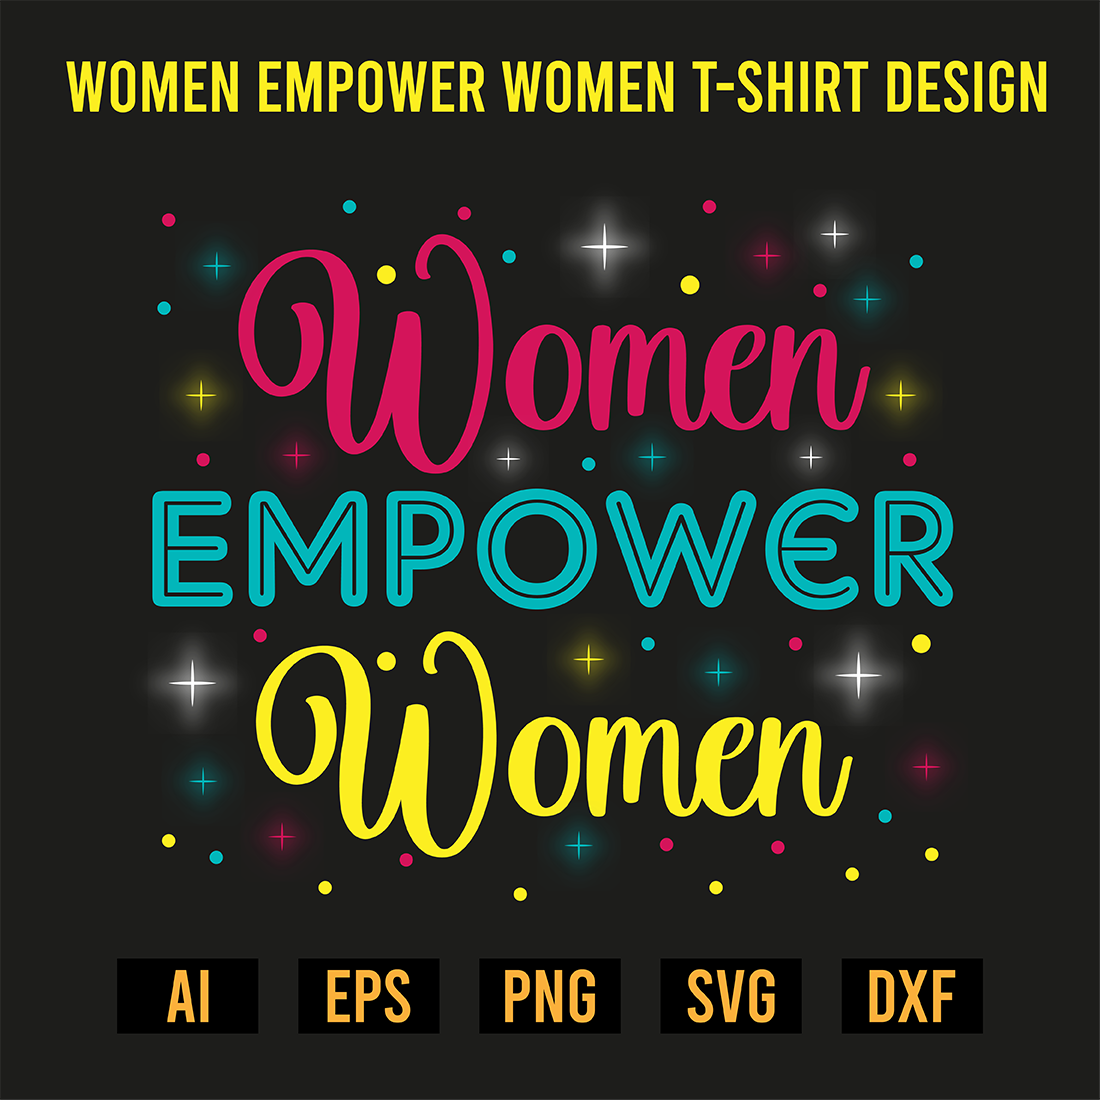 Women Empower Women T-Shirt Design preview image.